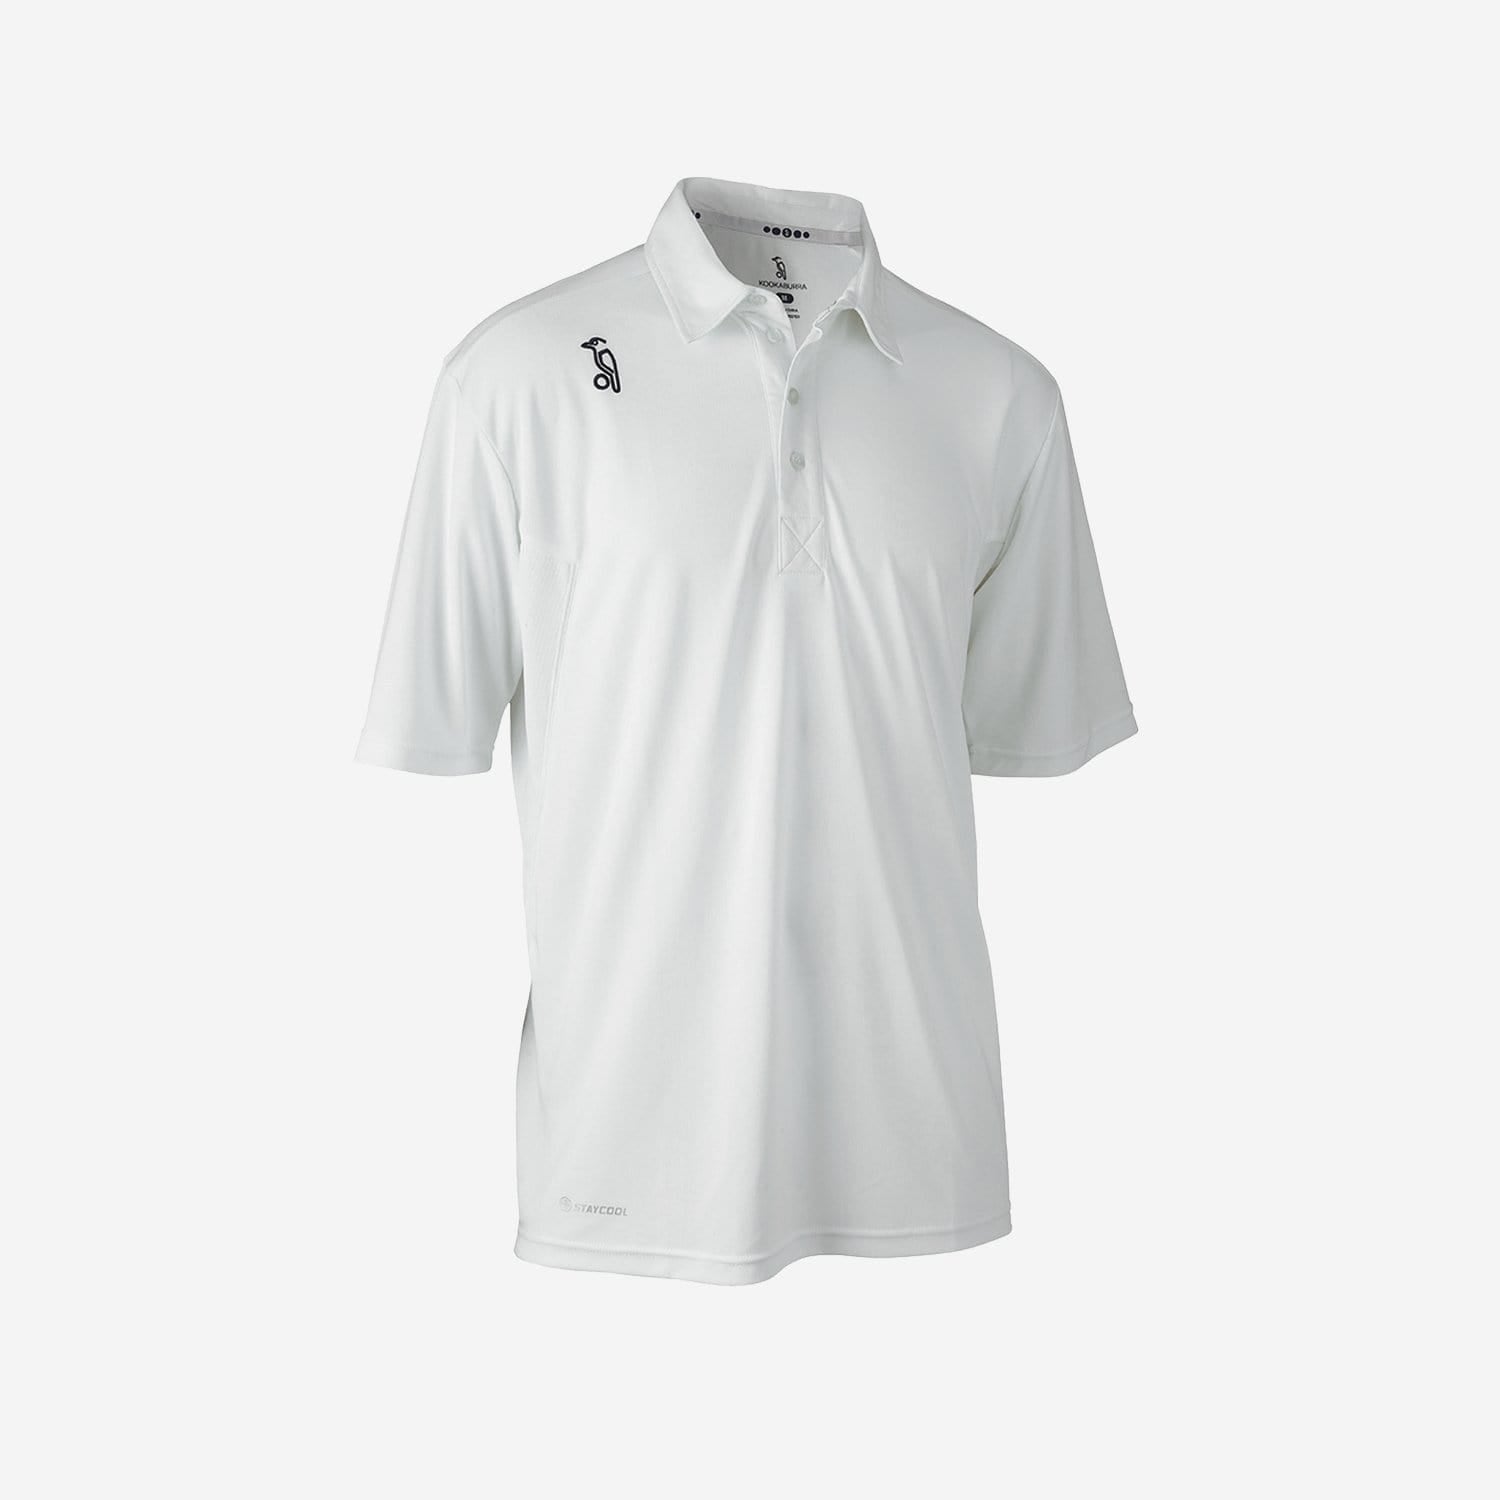 Kookaburra Clothing Kookaburra Pro Player Short Sleeve Cricket Shirt